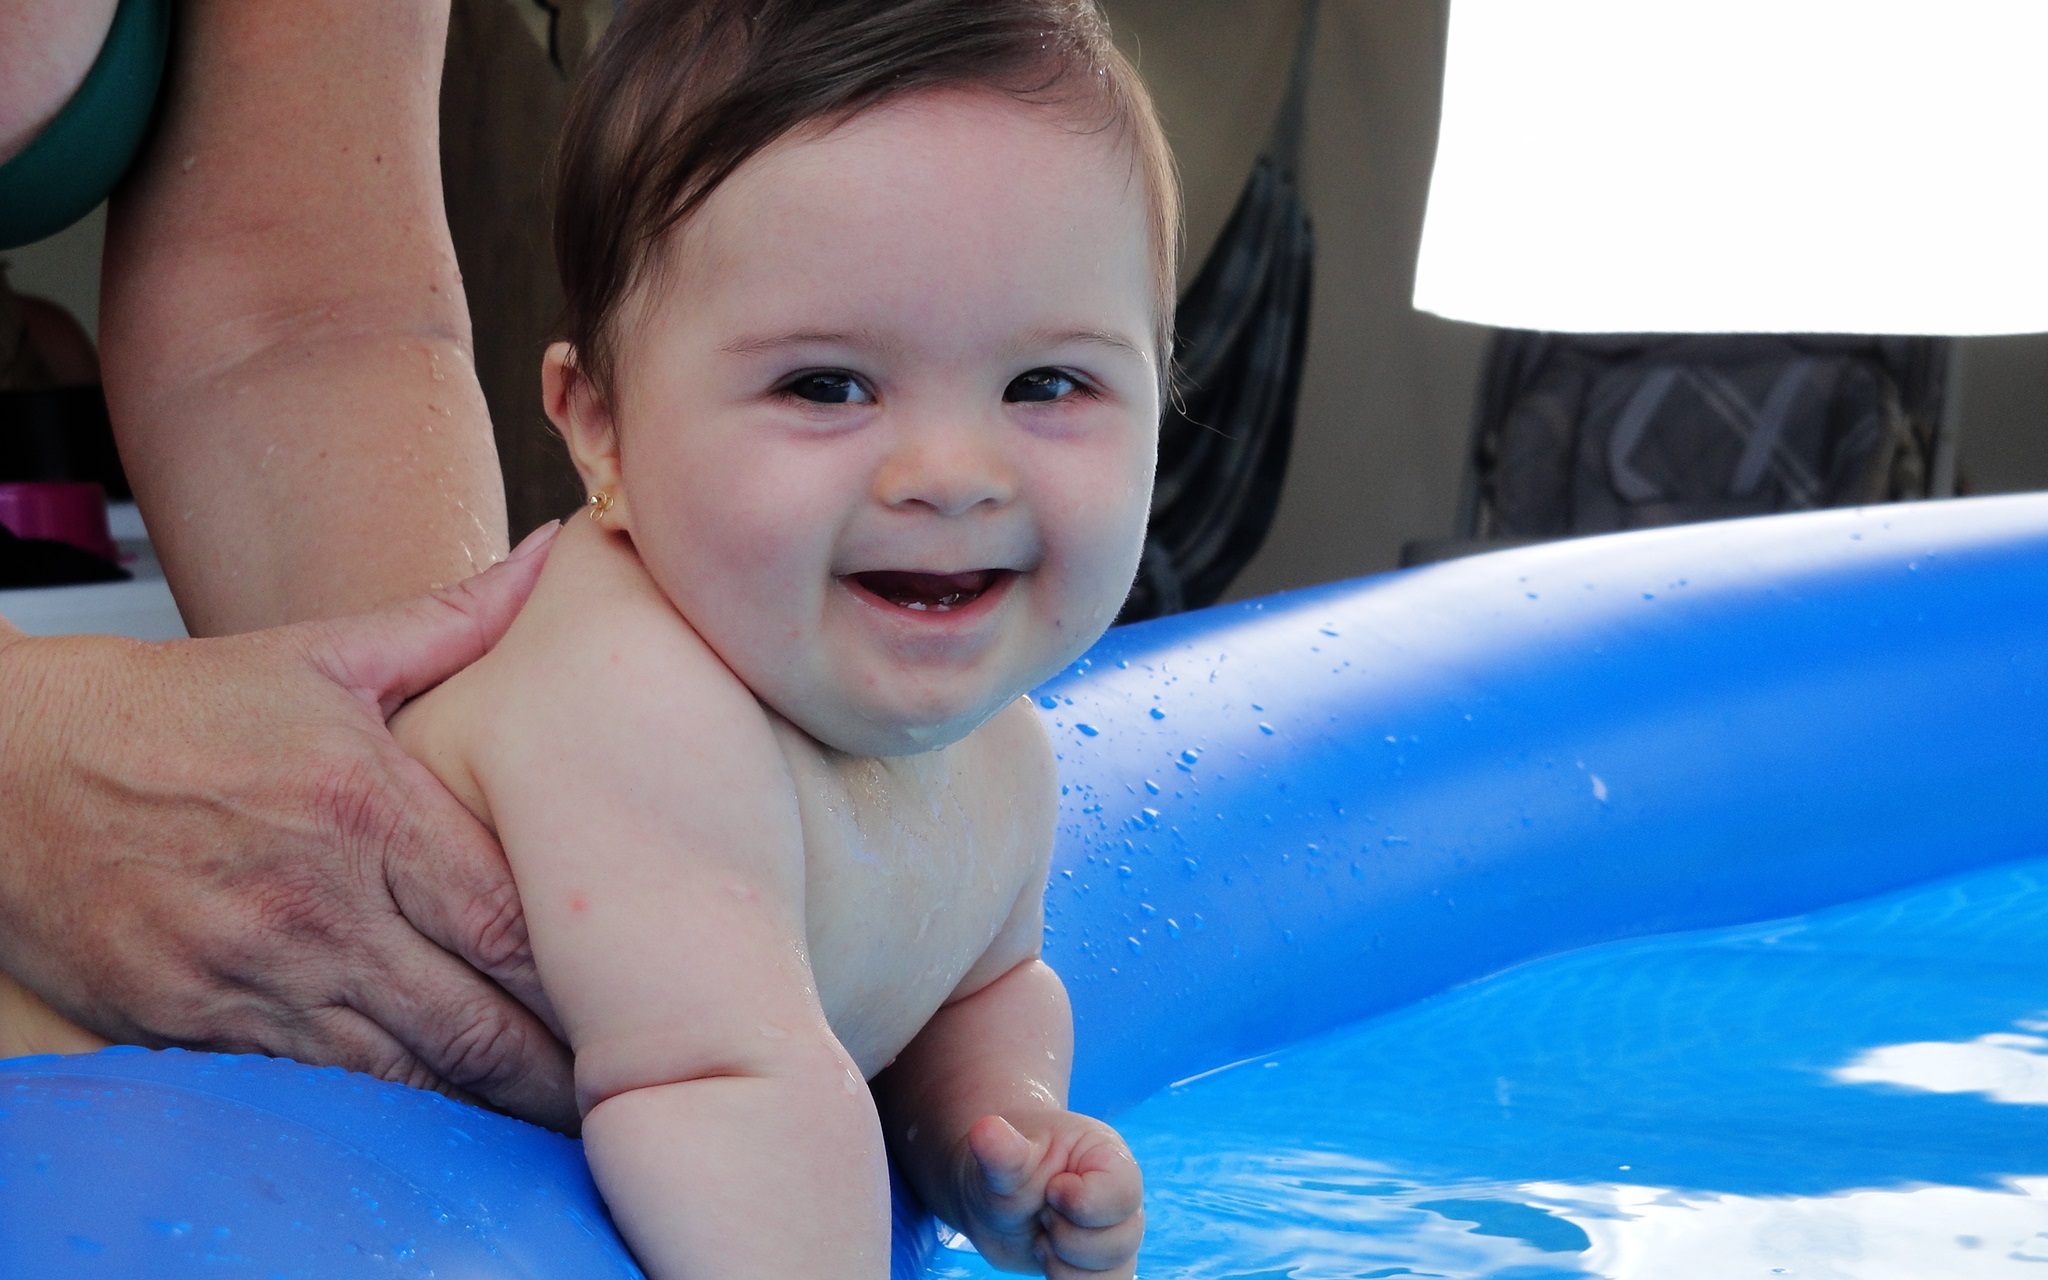 Bebê branca com síndrome de Down fazendo estimulação em uma piscina inflável. As mãos de alguém a seguram pelo corpo e a menininha sorri para a câmera.